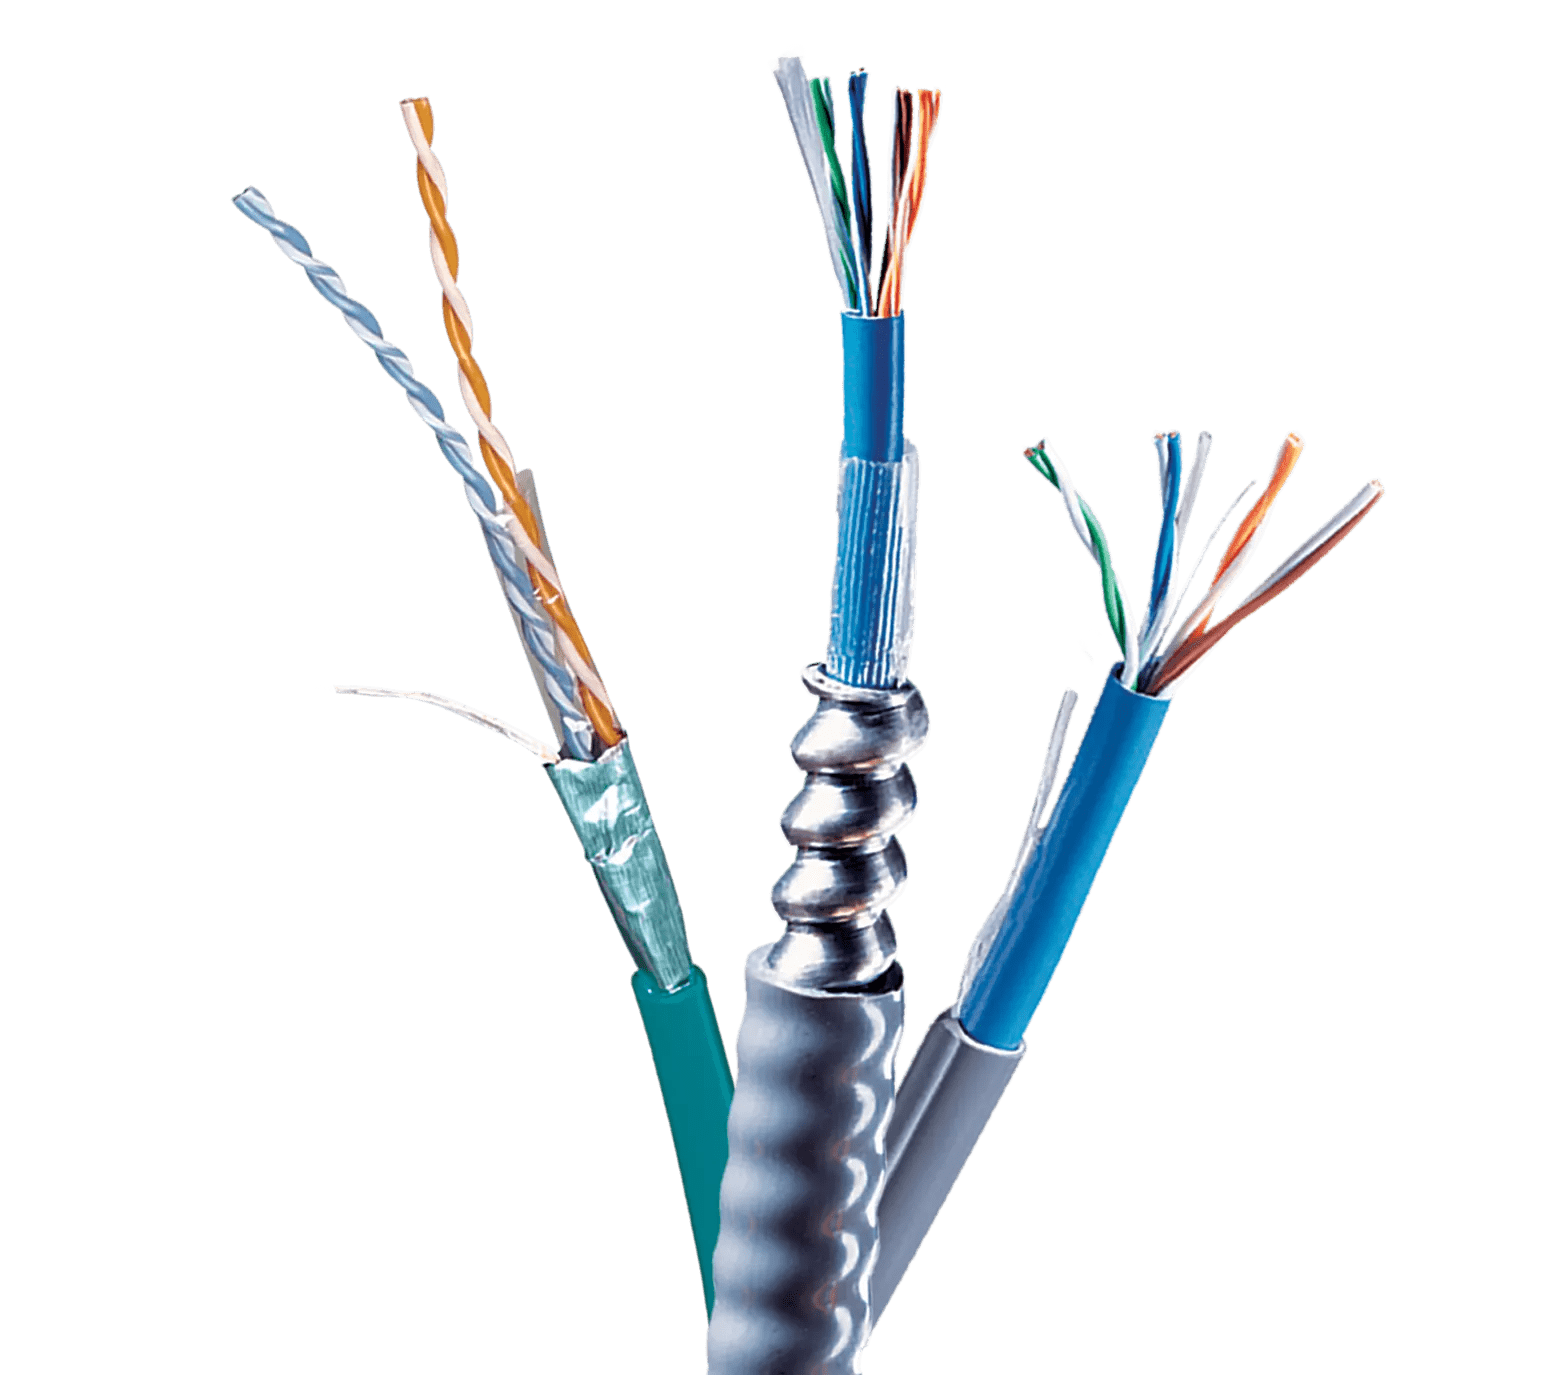 Câbles réseau CABLING ® câble réseau plat CAT6 - RJ45 - Ethernet